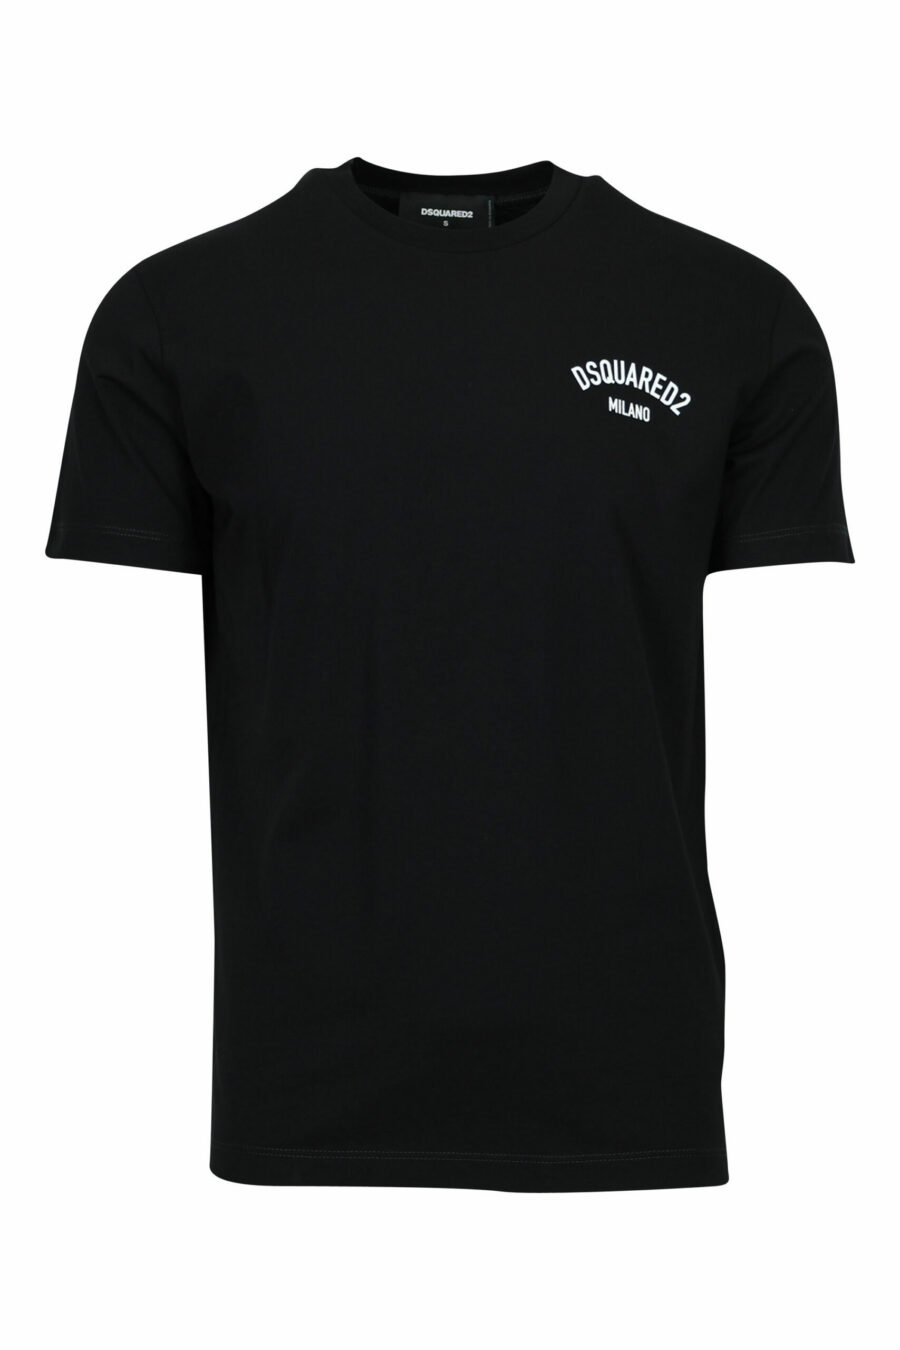 T-shirt noir avec logo "milano" plié - 8054148571047 scaled